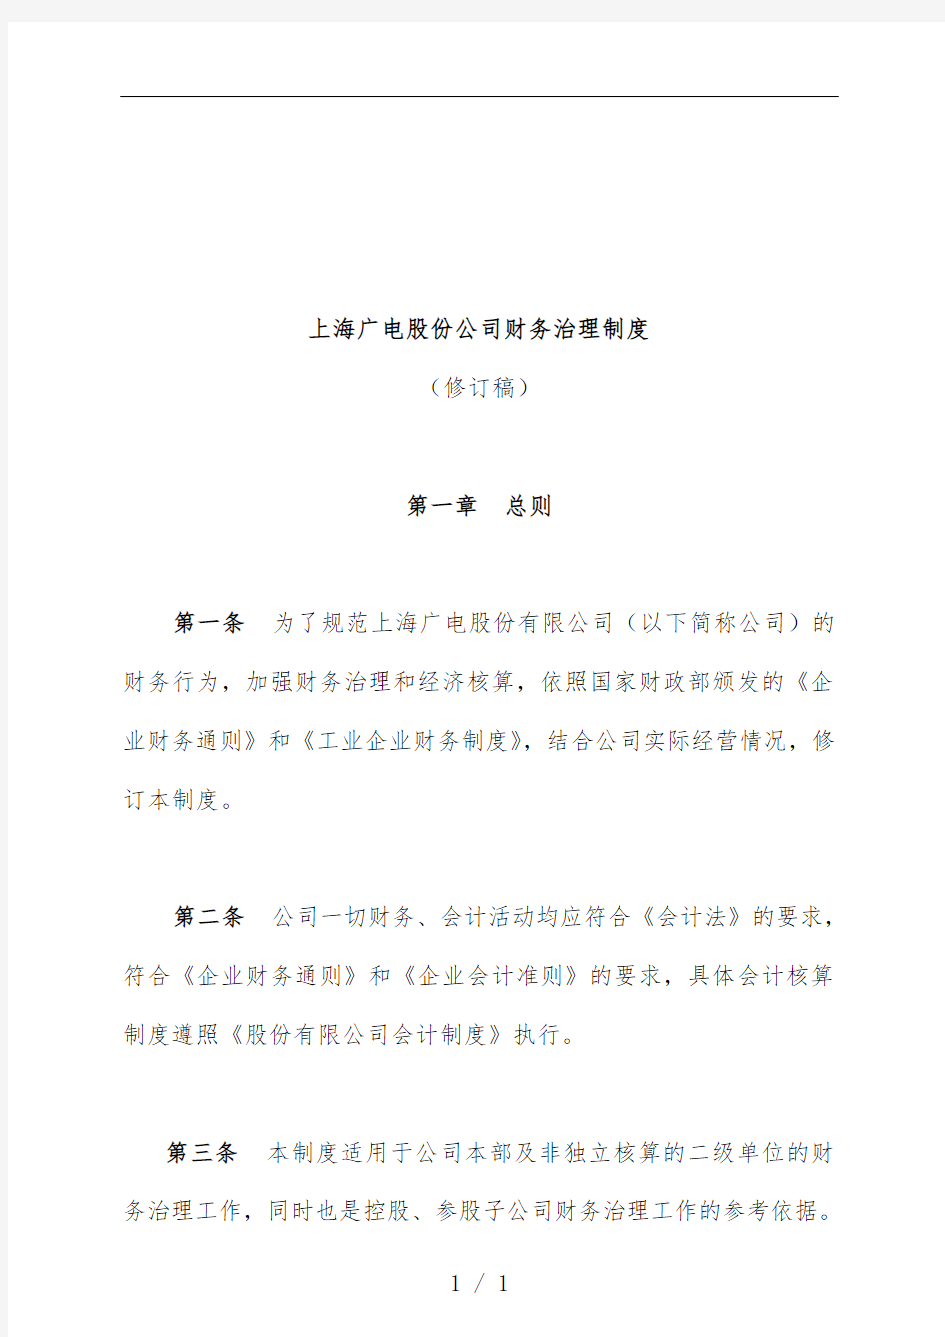 上海广电公司财务管理规章制度